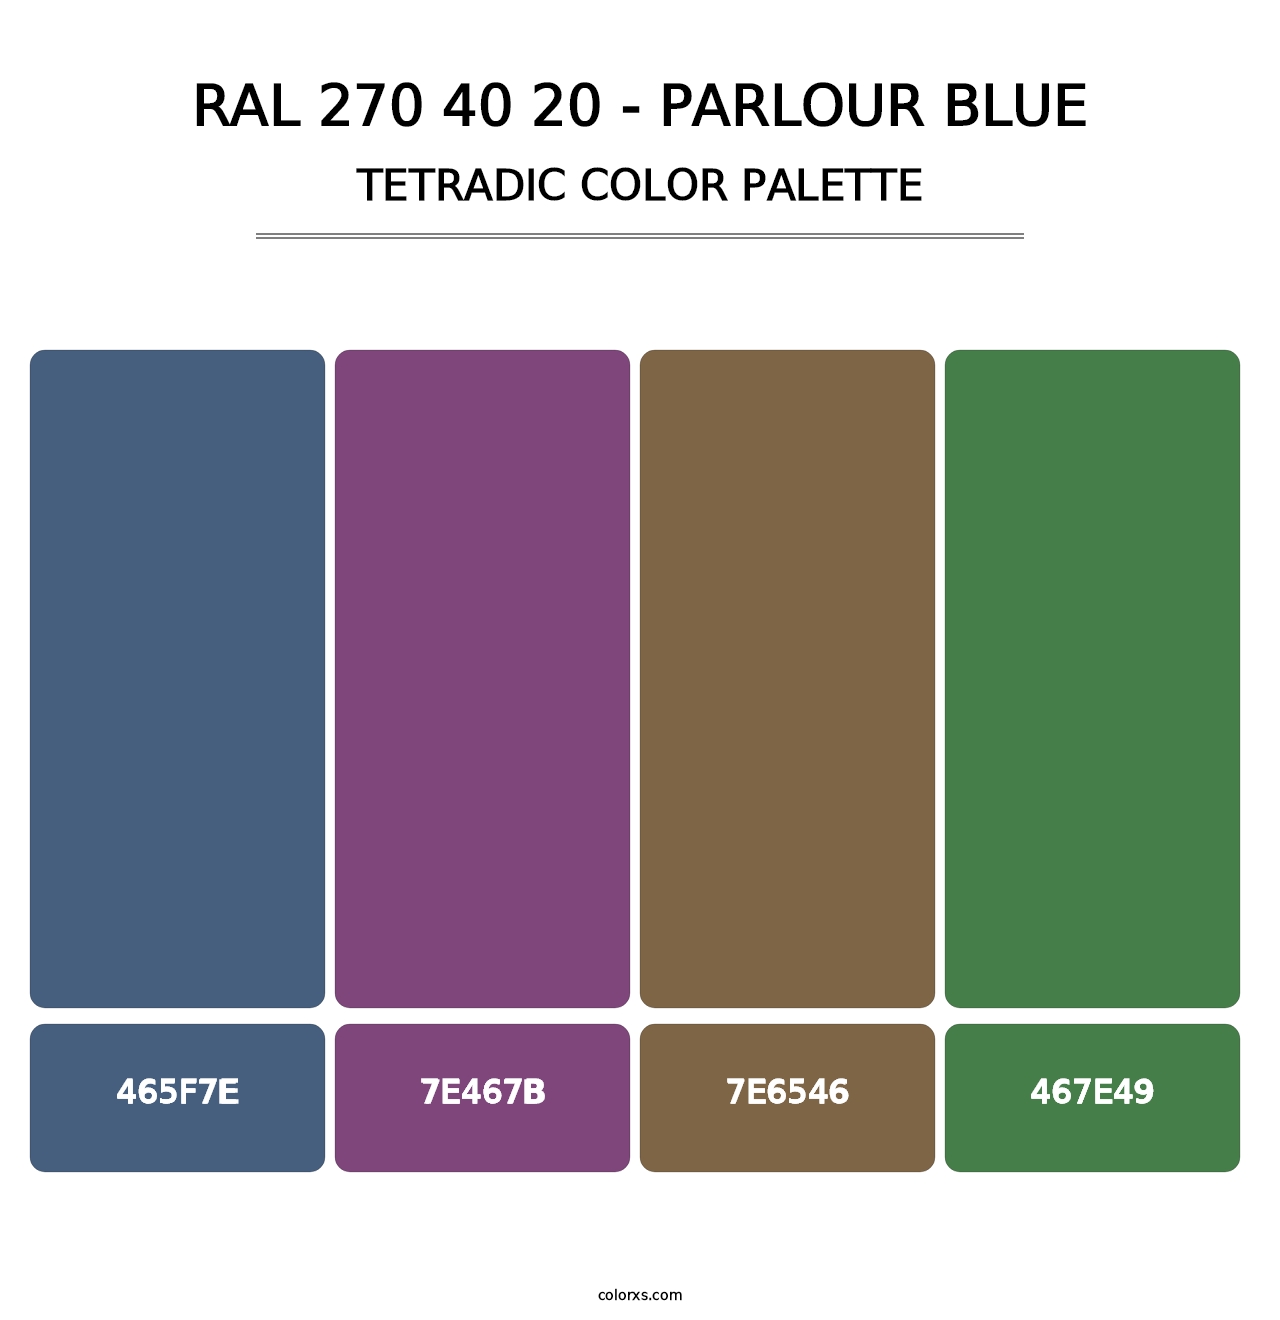 RAL 270 40 20 - Parlour Blue - Tetradic Color Palette